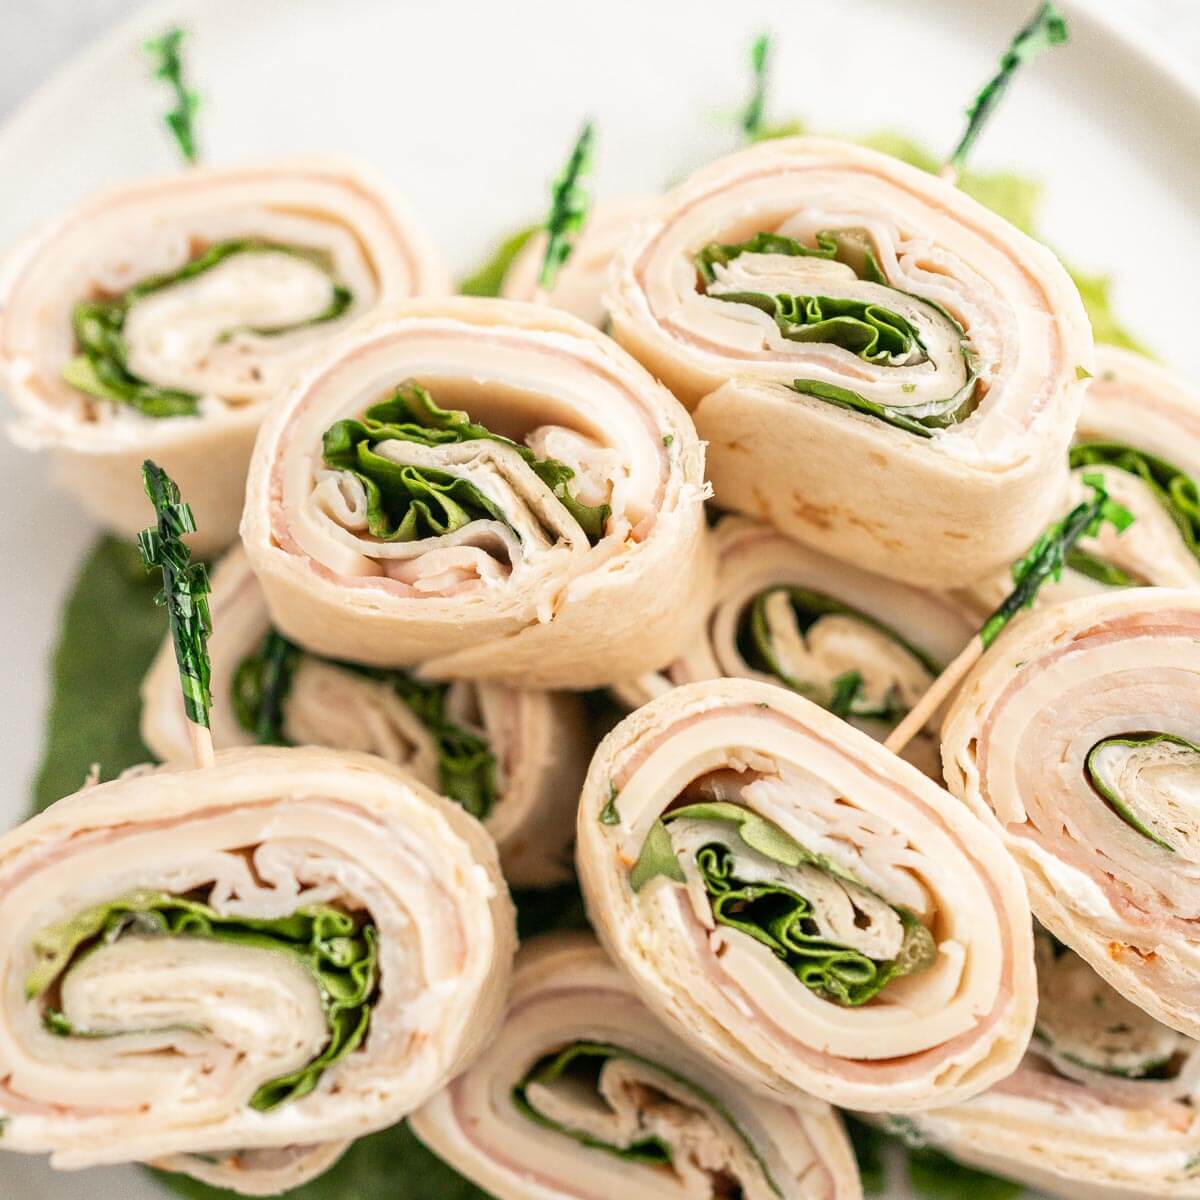 https://www.eatingonadime.com/wp-content/uploads/2022/07/pinwheel-sandwiches-27.jpg